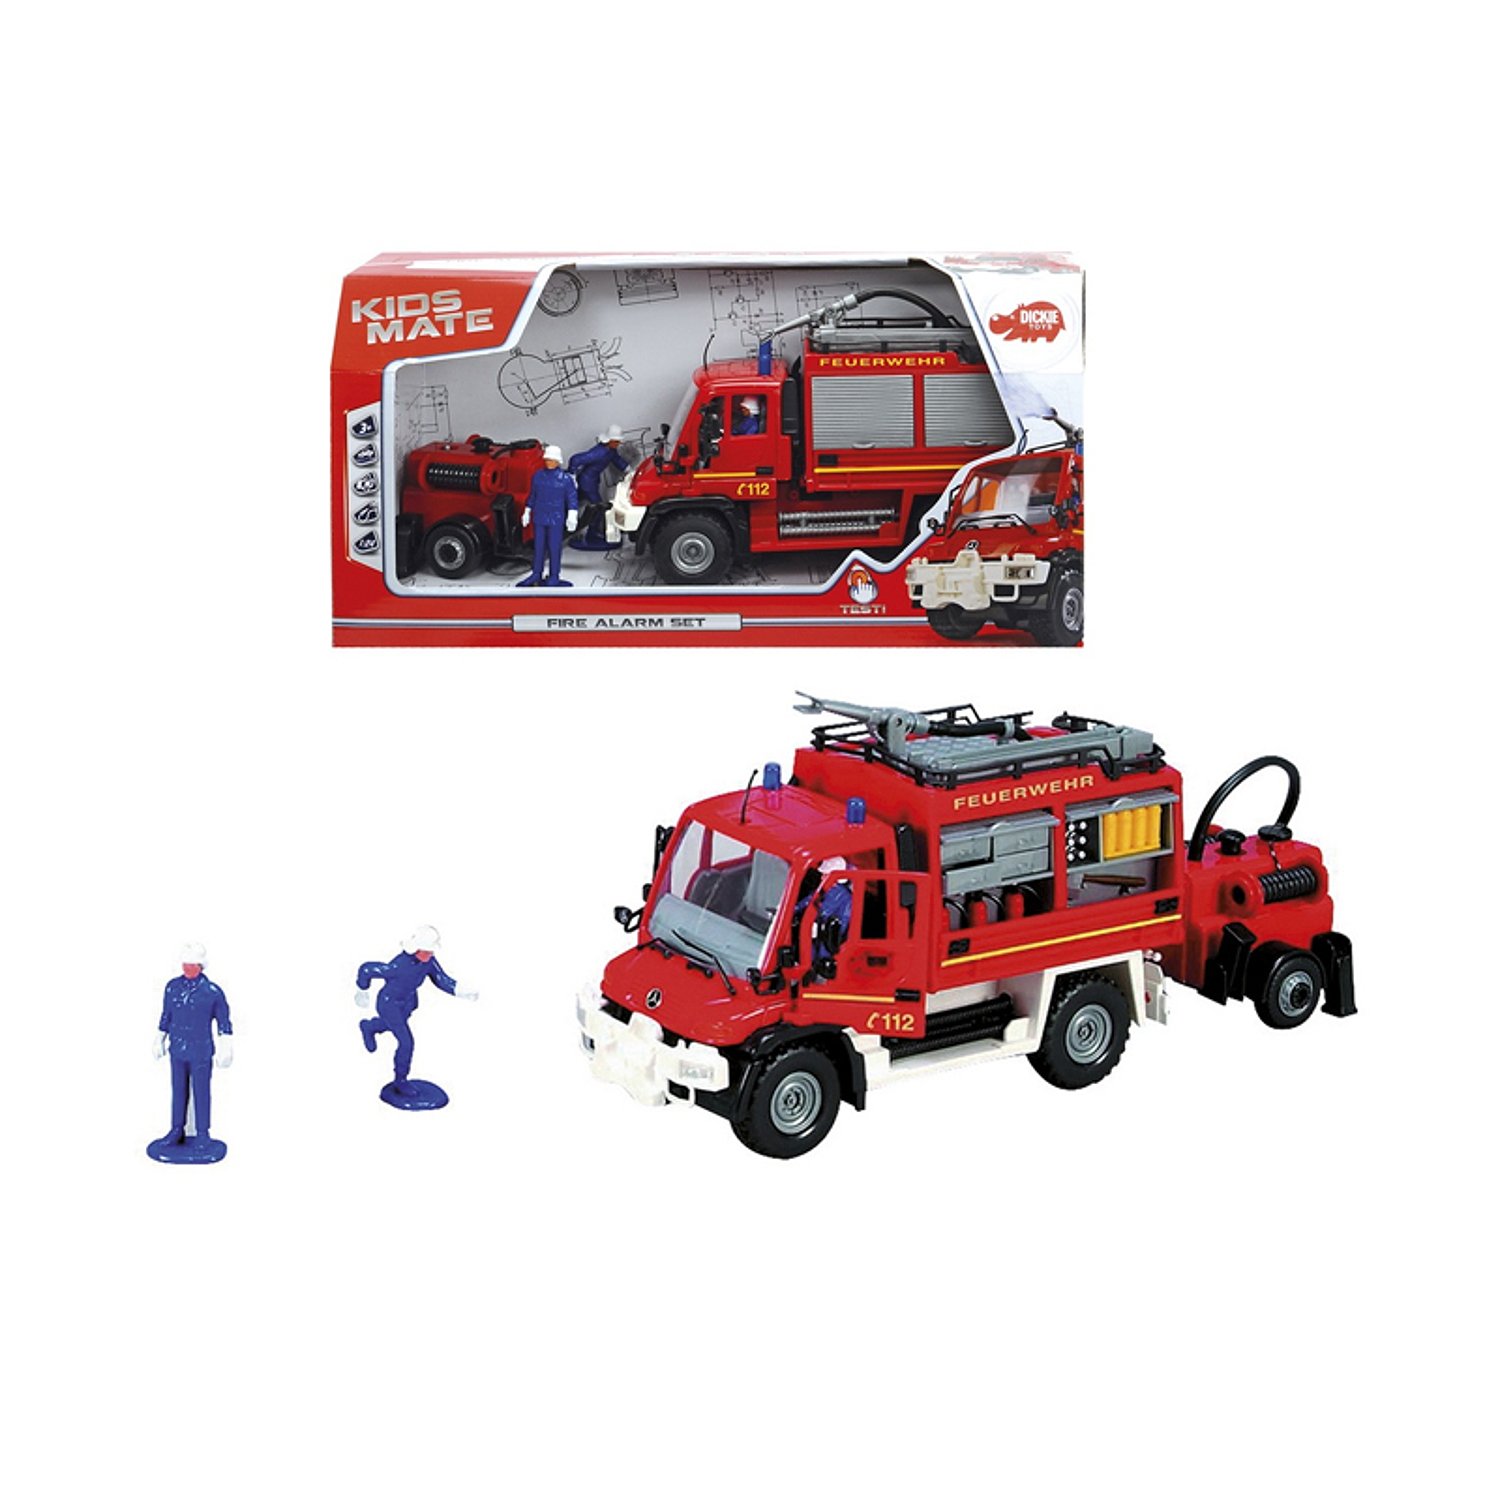 Купить игрушку пожарный. Пожарный автомобиль Dickie Toys 3444823 34 см. Пожарная машина Dickie Toys "Magirus". Пожарная машина игрушка Dickie. Машинка Dickie Toys Multicar City worker (3825002) 1:24.